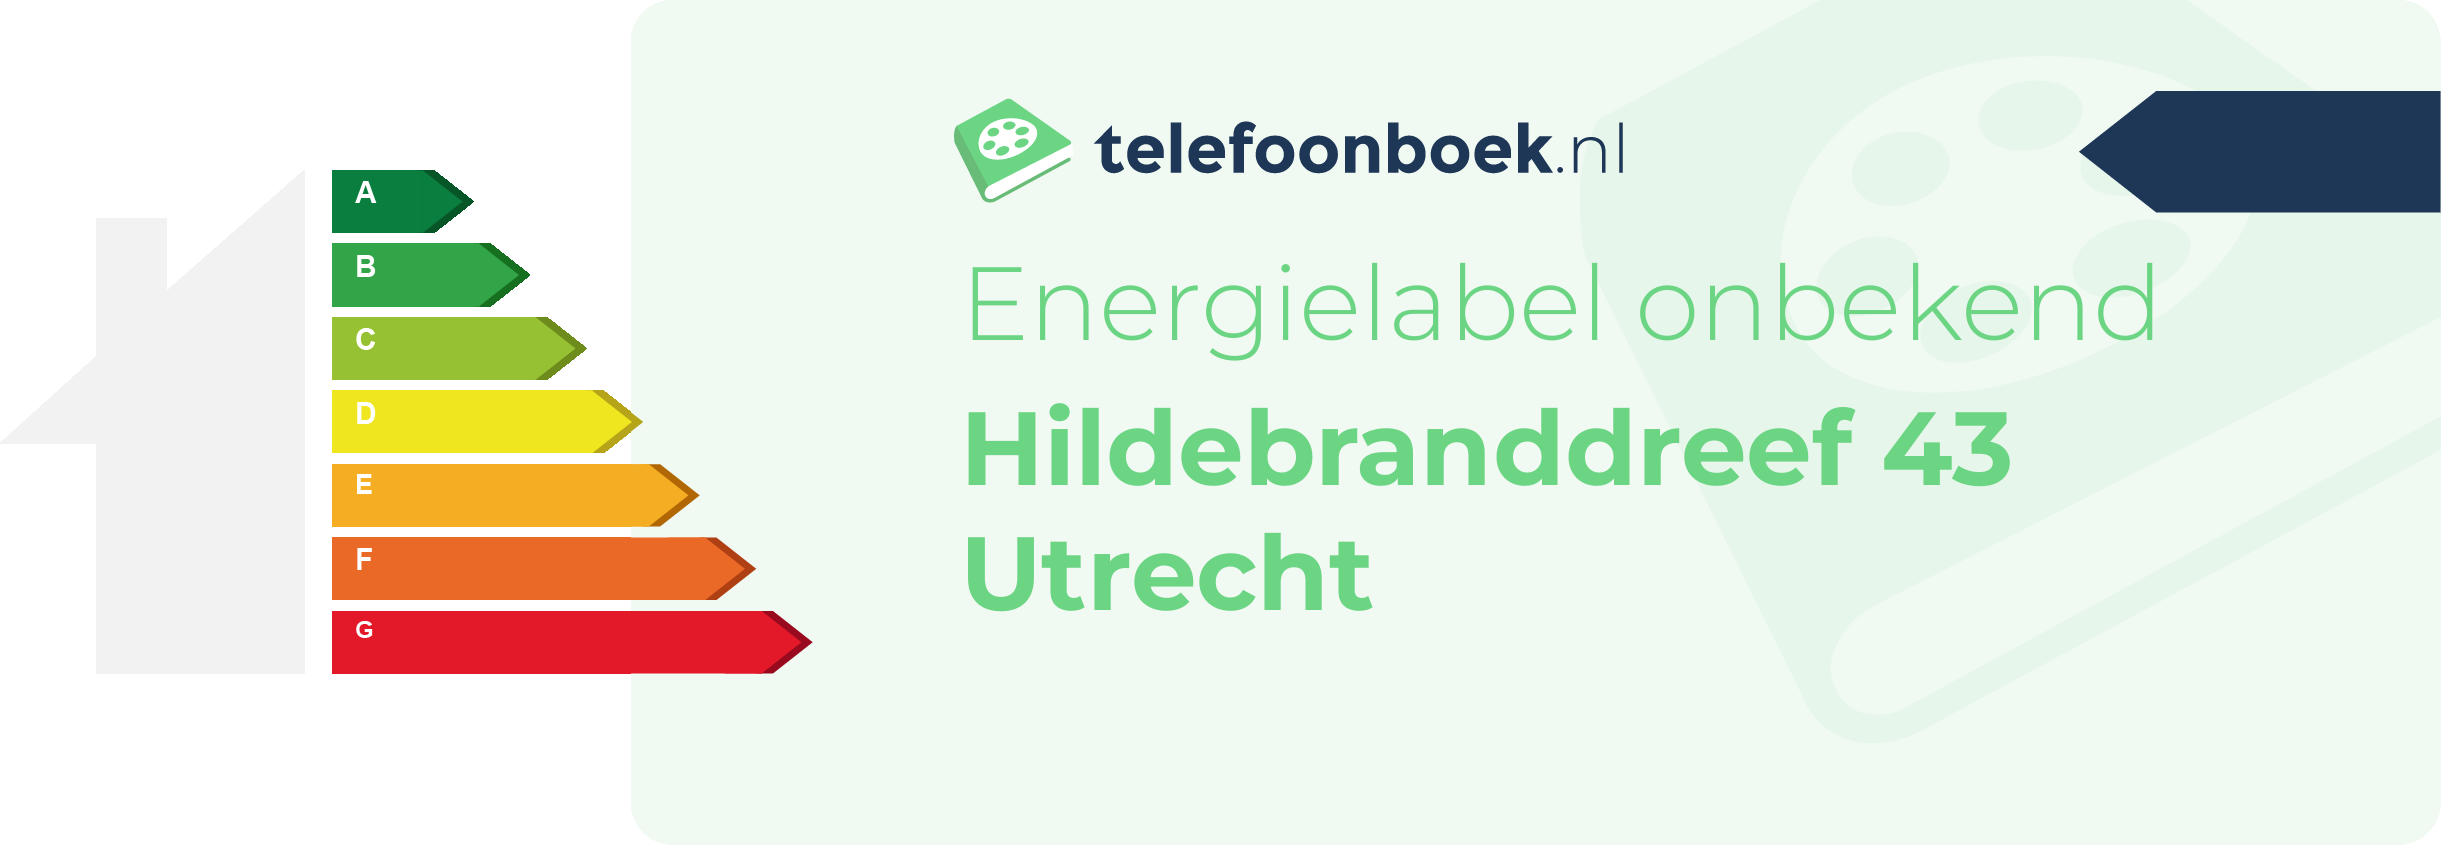 Energielabel Hildebranddreef 43 Utrecht